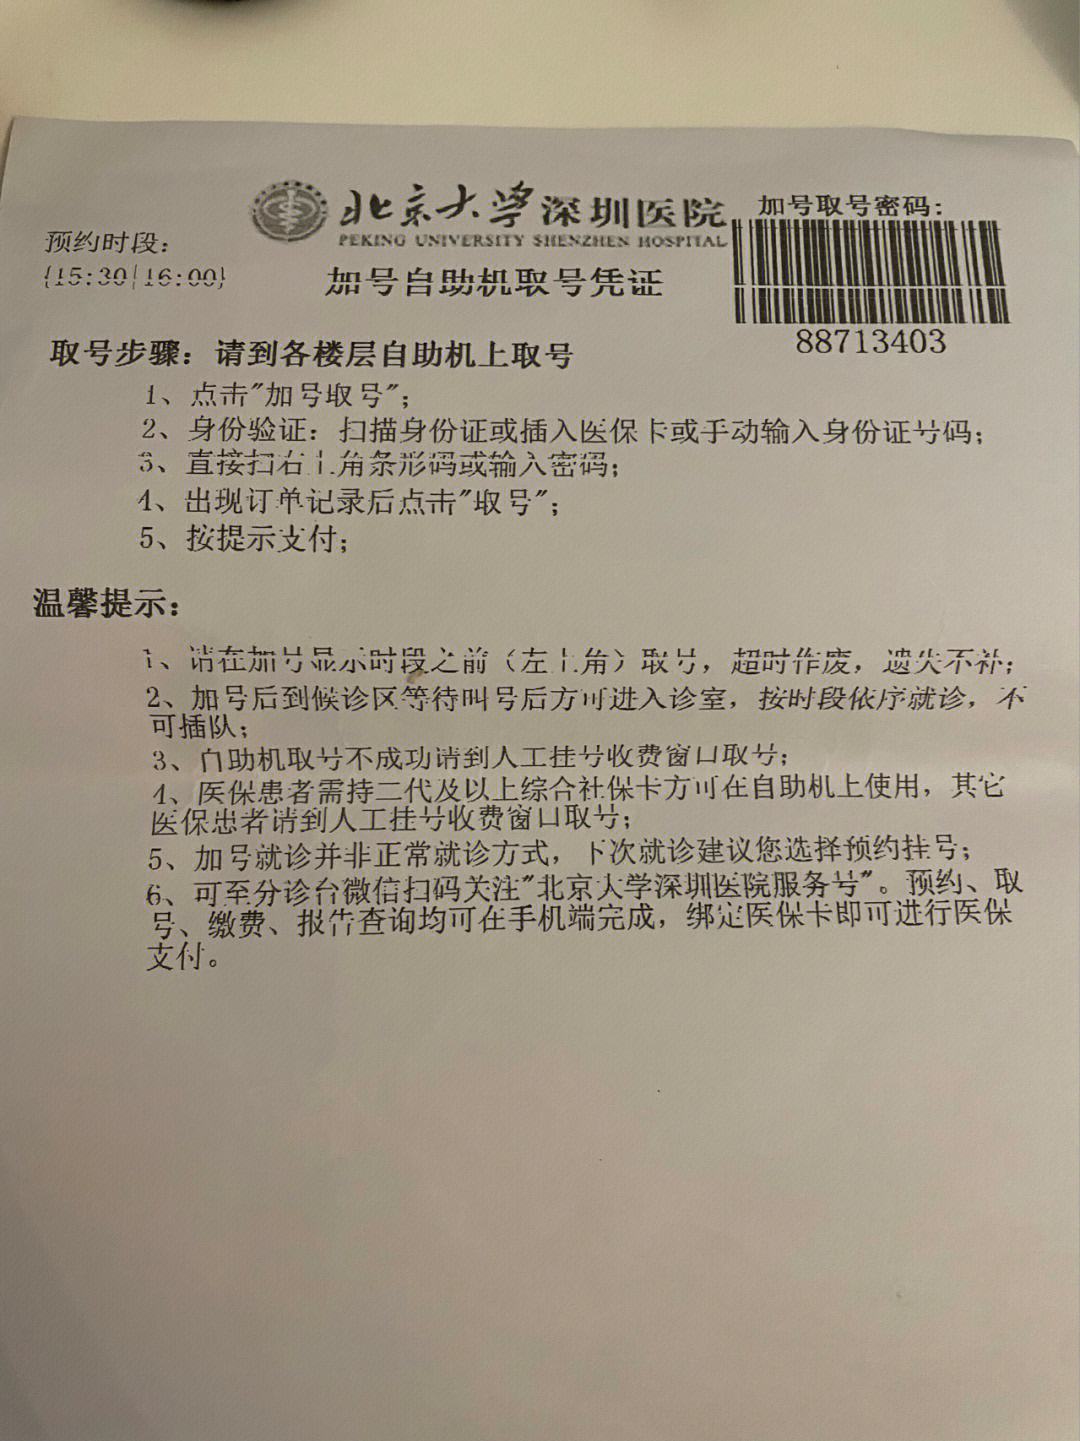 关于北京妇产医院贩子联系方式《提前预约很靠谱》【秒出号】的信息